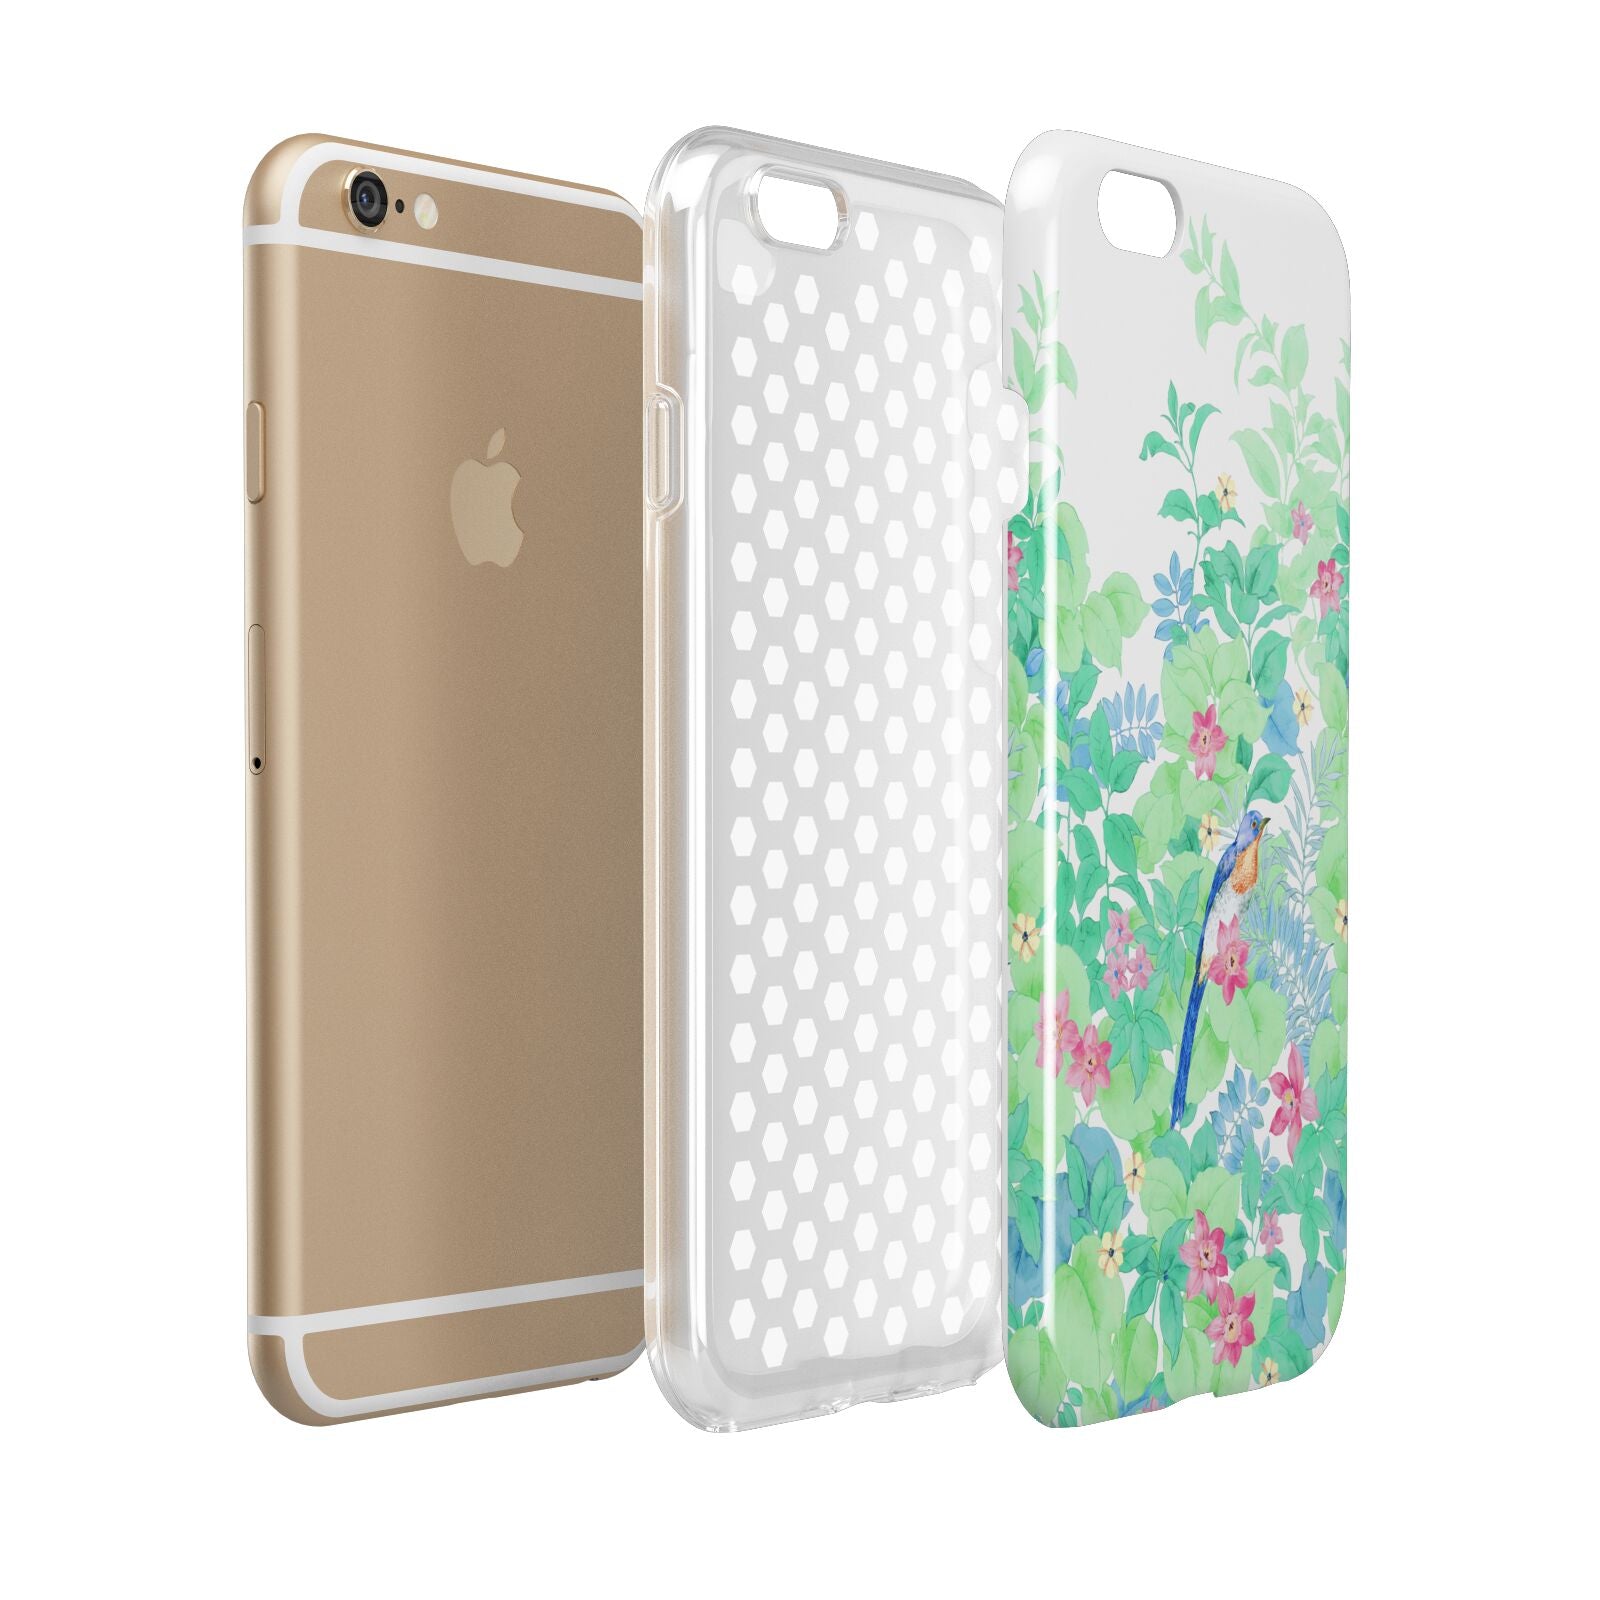 Watercolour Floral Apple iPhone 6 3D Tough Case Expanded view